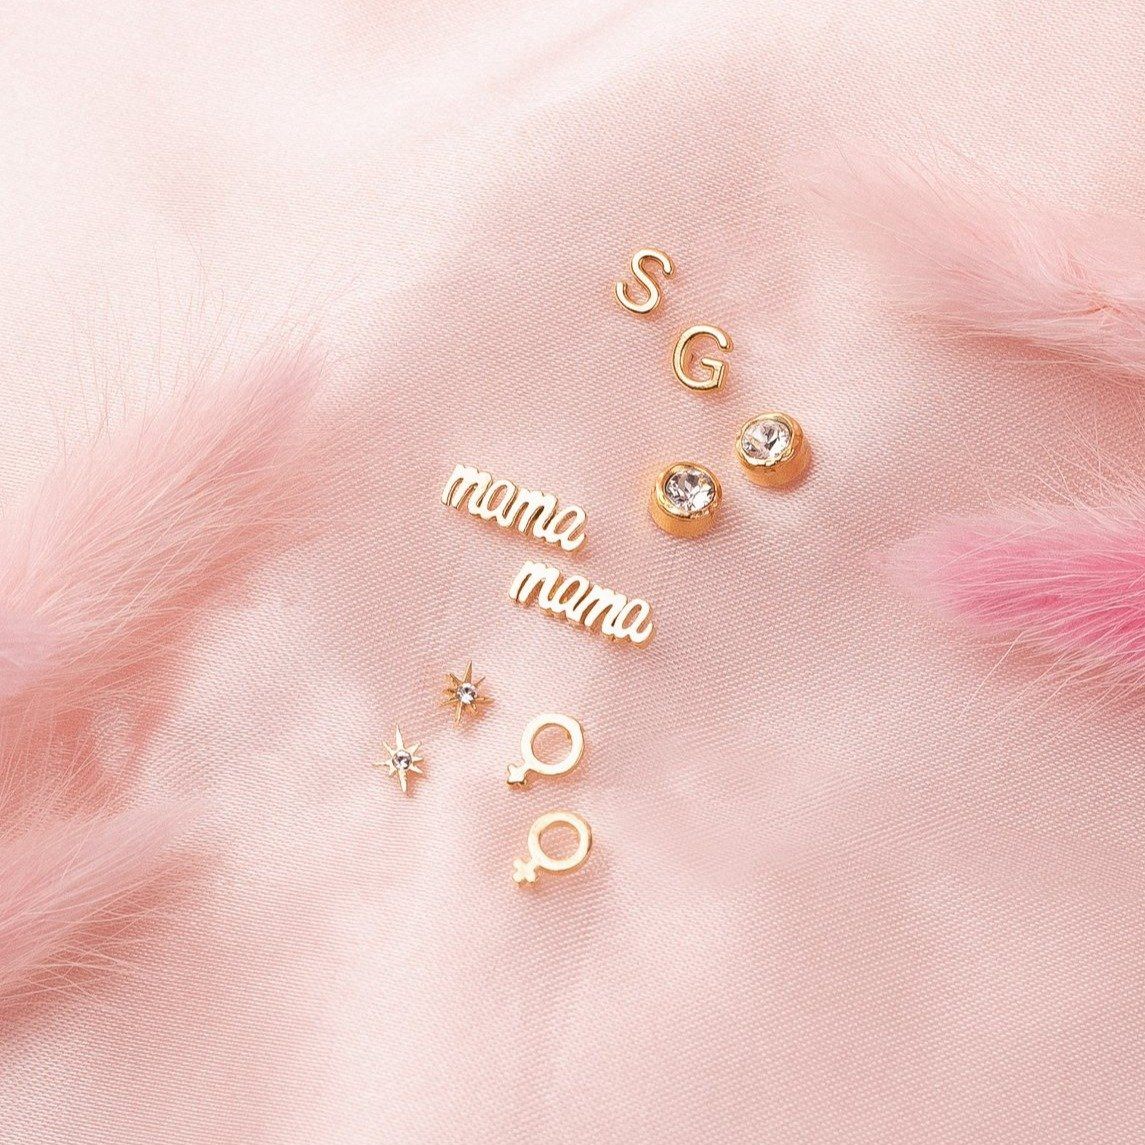 Dainty gold Mama Stud Earrings by Katie dean Jewelry, along with Initial Earrings, Birthstone Earrings, Little Dipper star stud earrings, and female symbol stud earrings